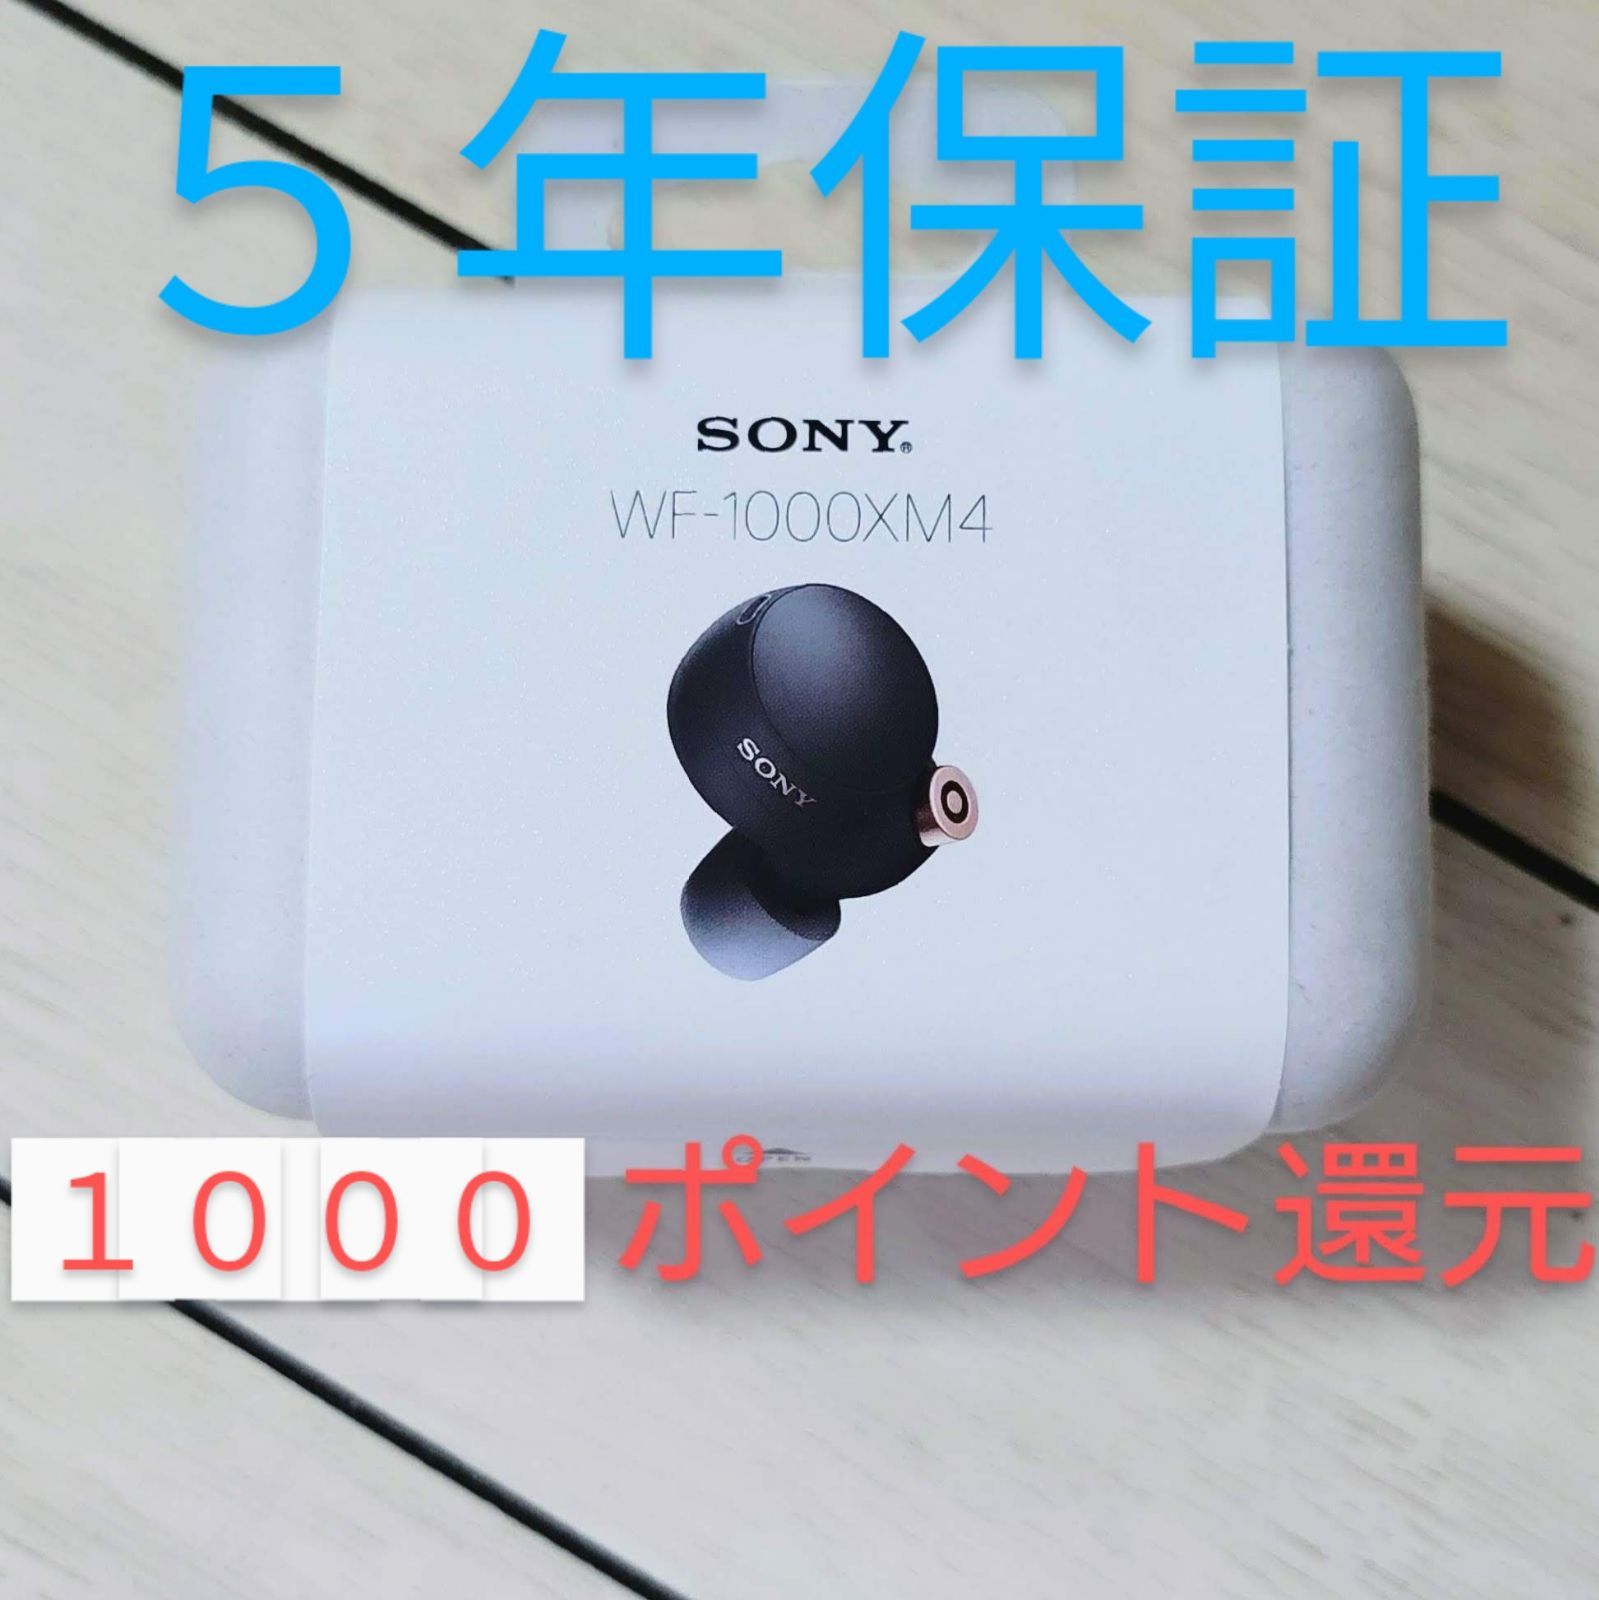 【5年保証】ソニー WF-1000XM4 Black 黒 SONY ワイヤレス